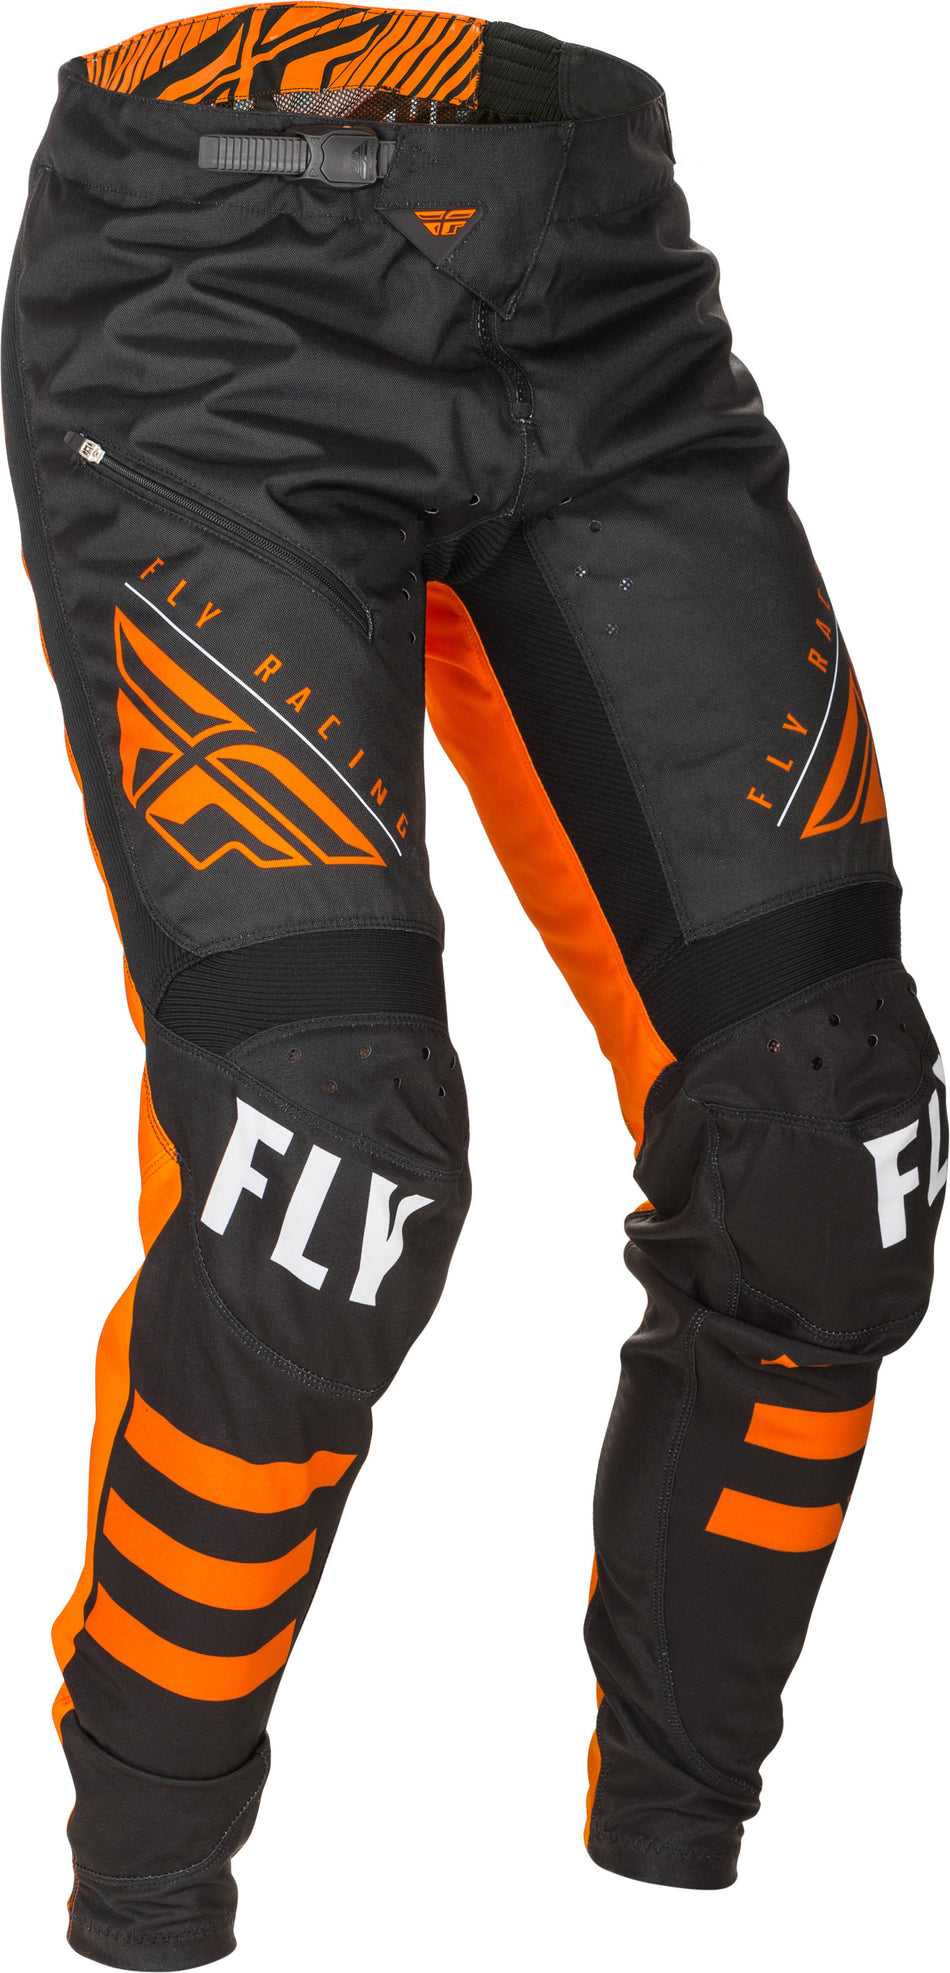 FLY RACING Kinetic Bicycle Pants Black/Orange Sz 36 373-04736